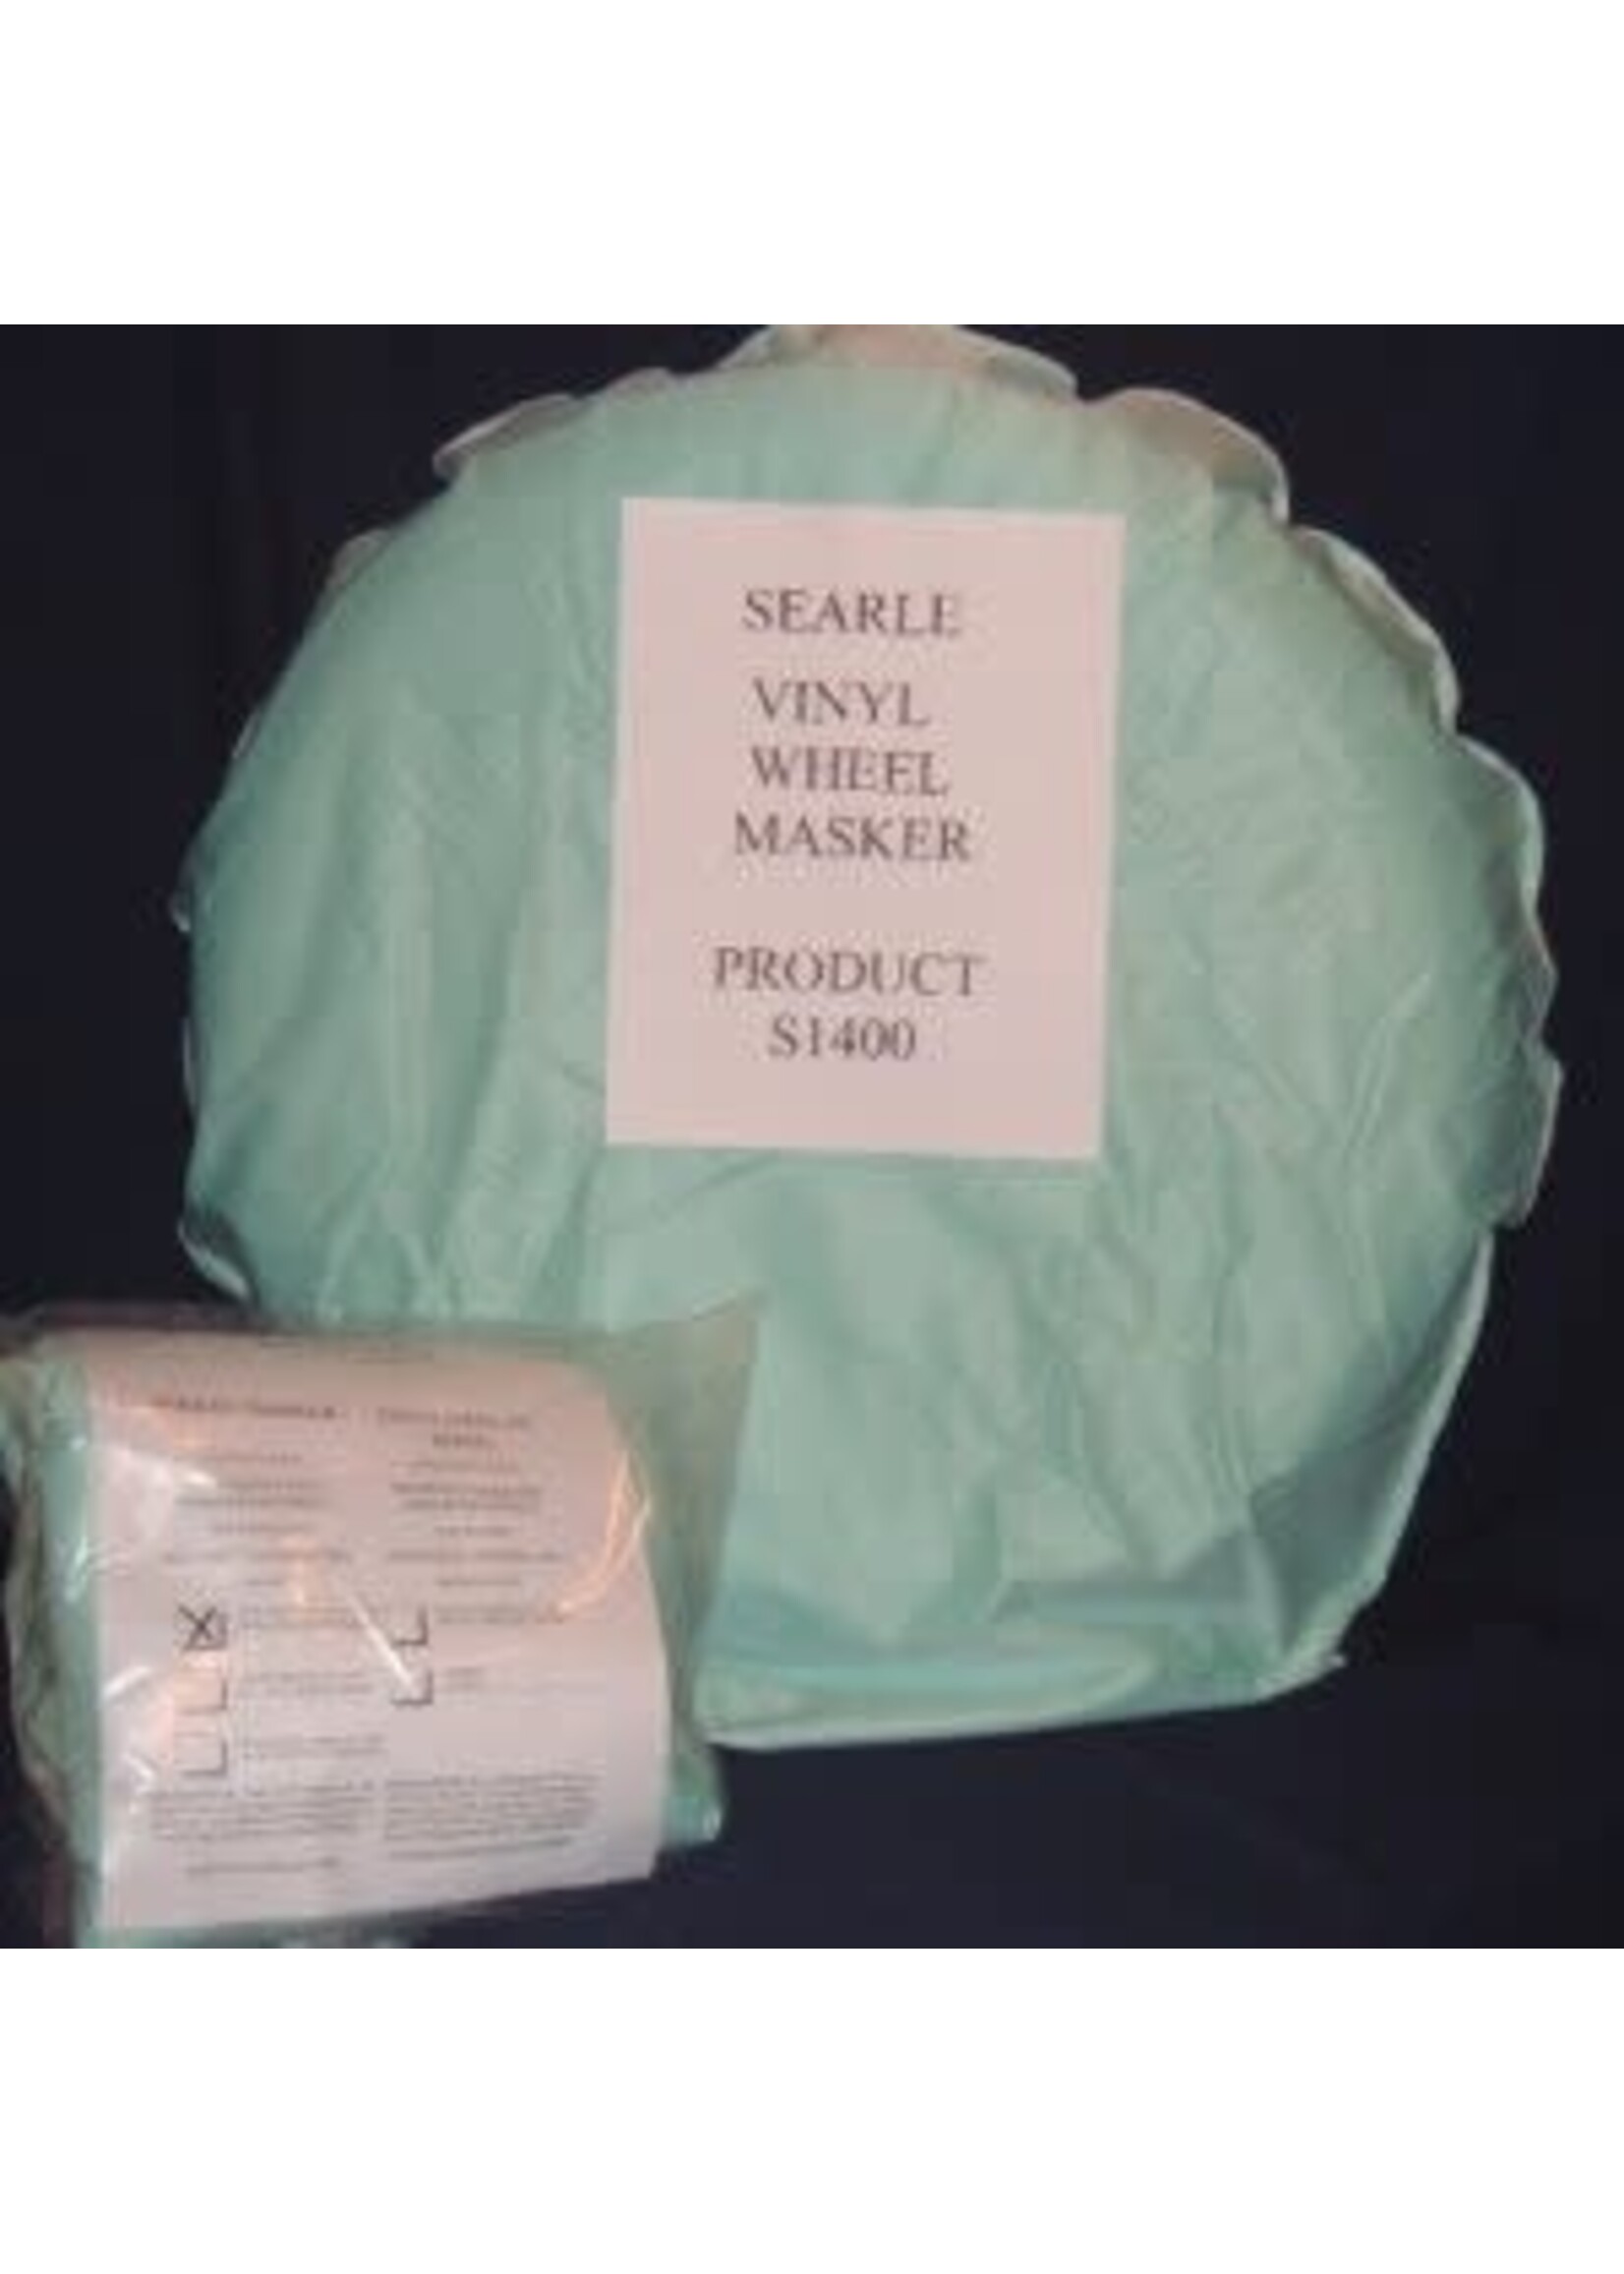 Searle S-1402 - 16-18 Inch Wheel Masker Reuseable